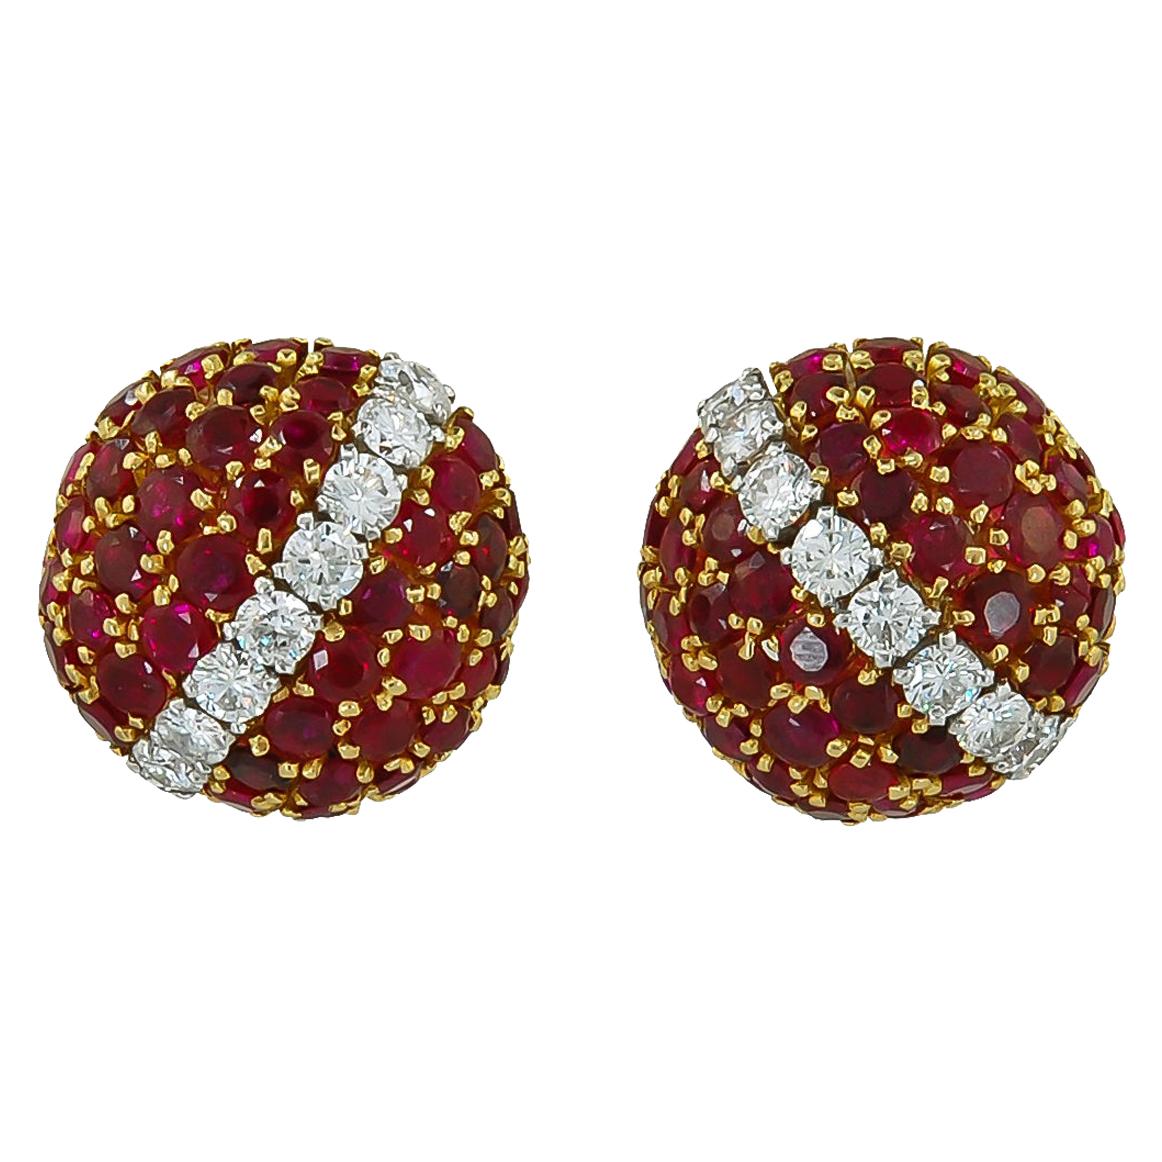 Van Cleef & Arpels Province Ruby Bombe Earrings